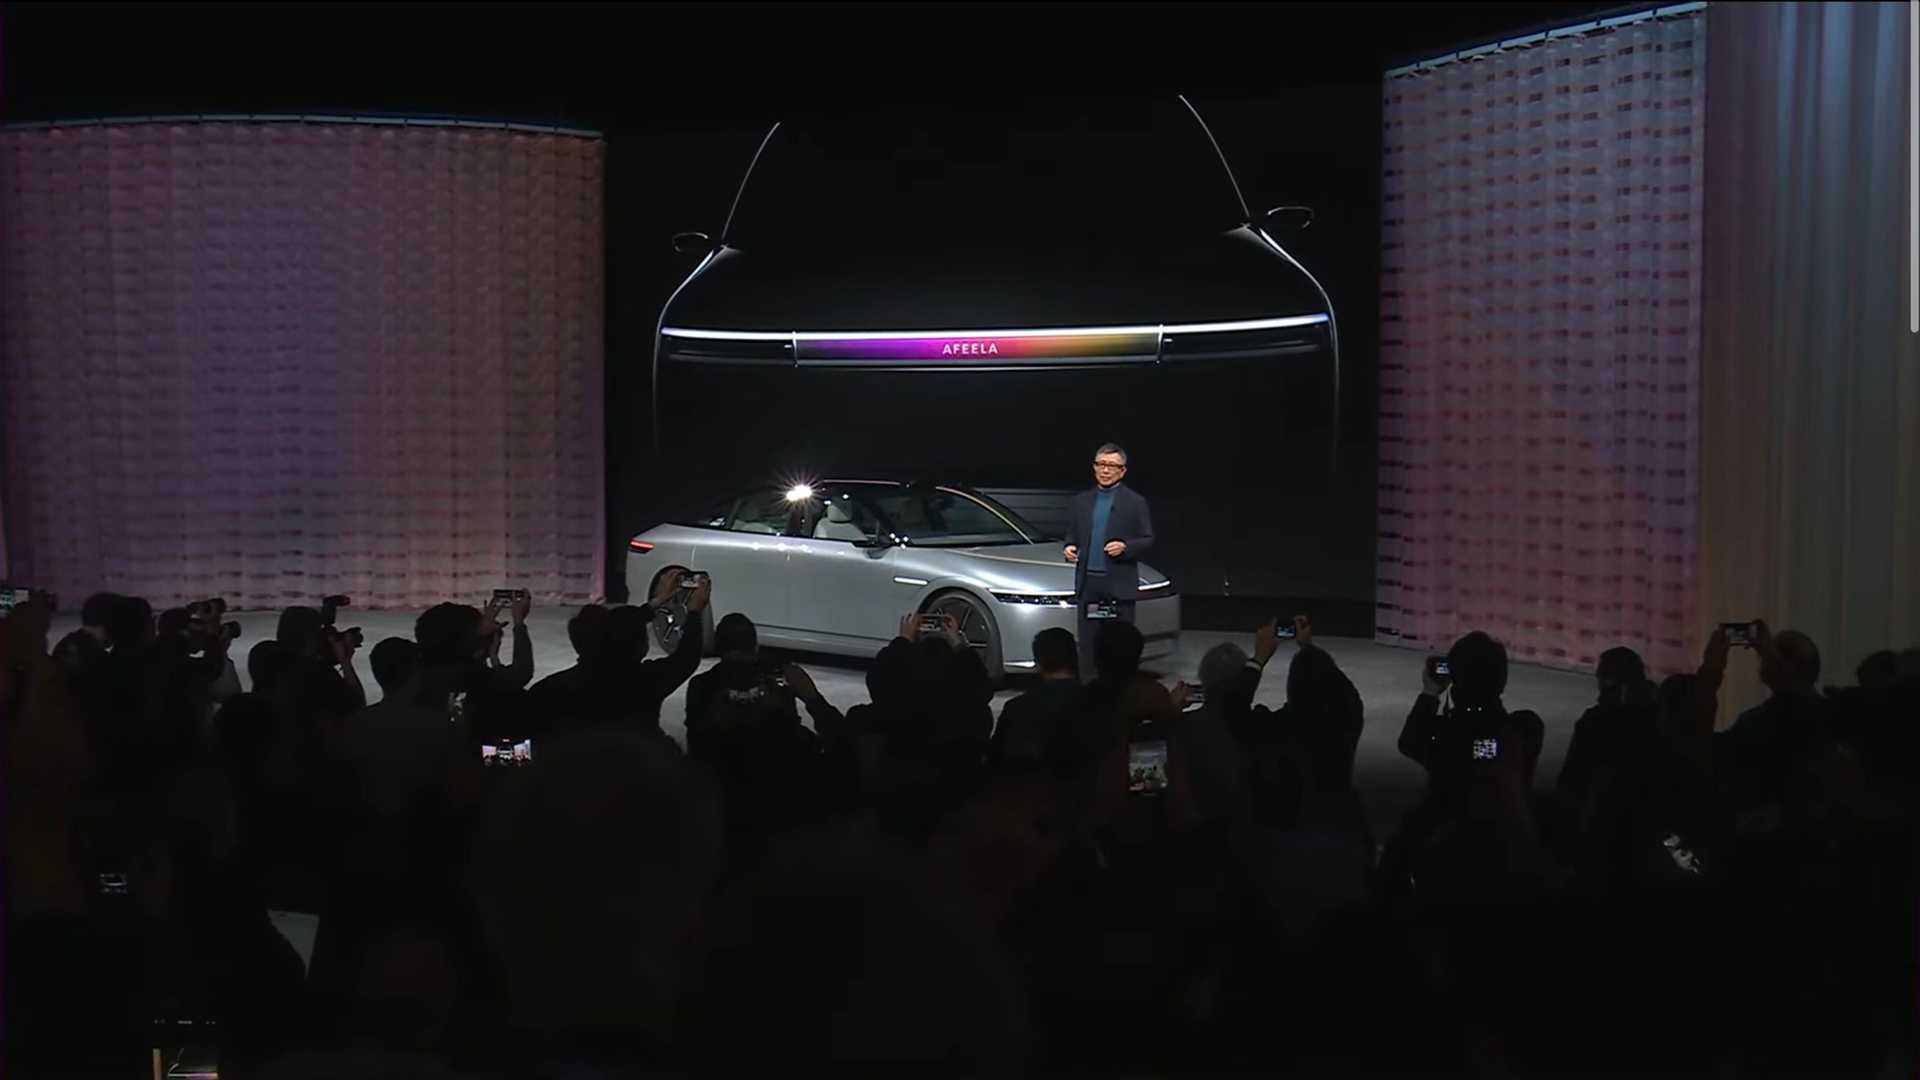 سوني تطلق علامتها التجارية الجديدة للسيارات رسمياً بالتعاون مع هوندا 7